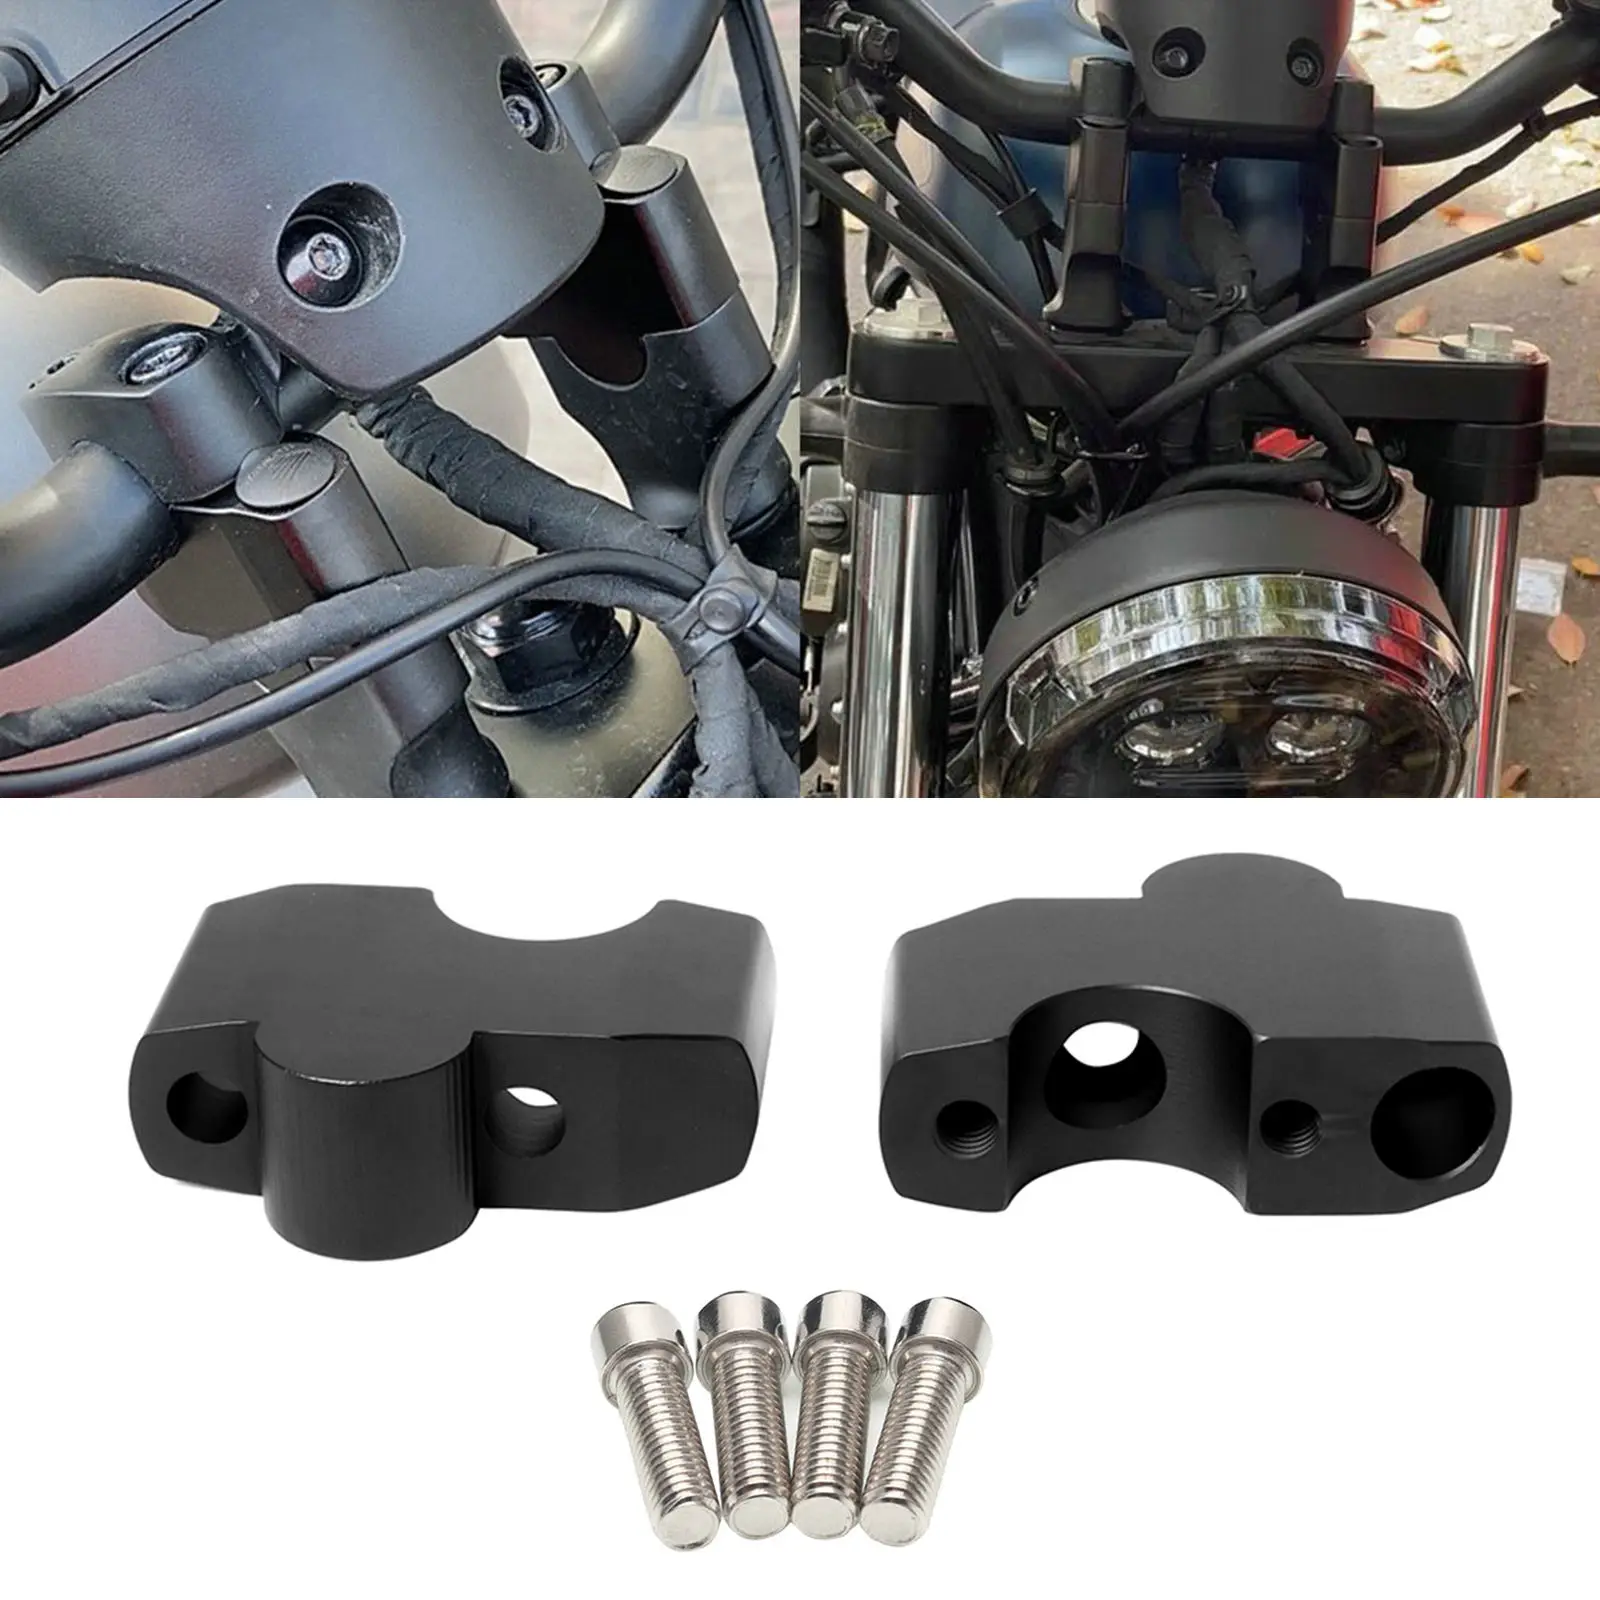 Motorcycle Aluminum Handlebar Riser Kit for Honda CMX500 Rebel500, Professional Accessories